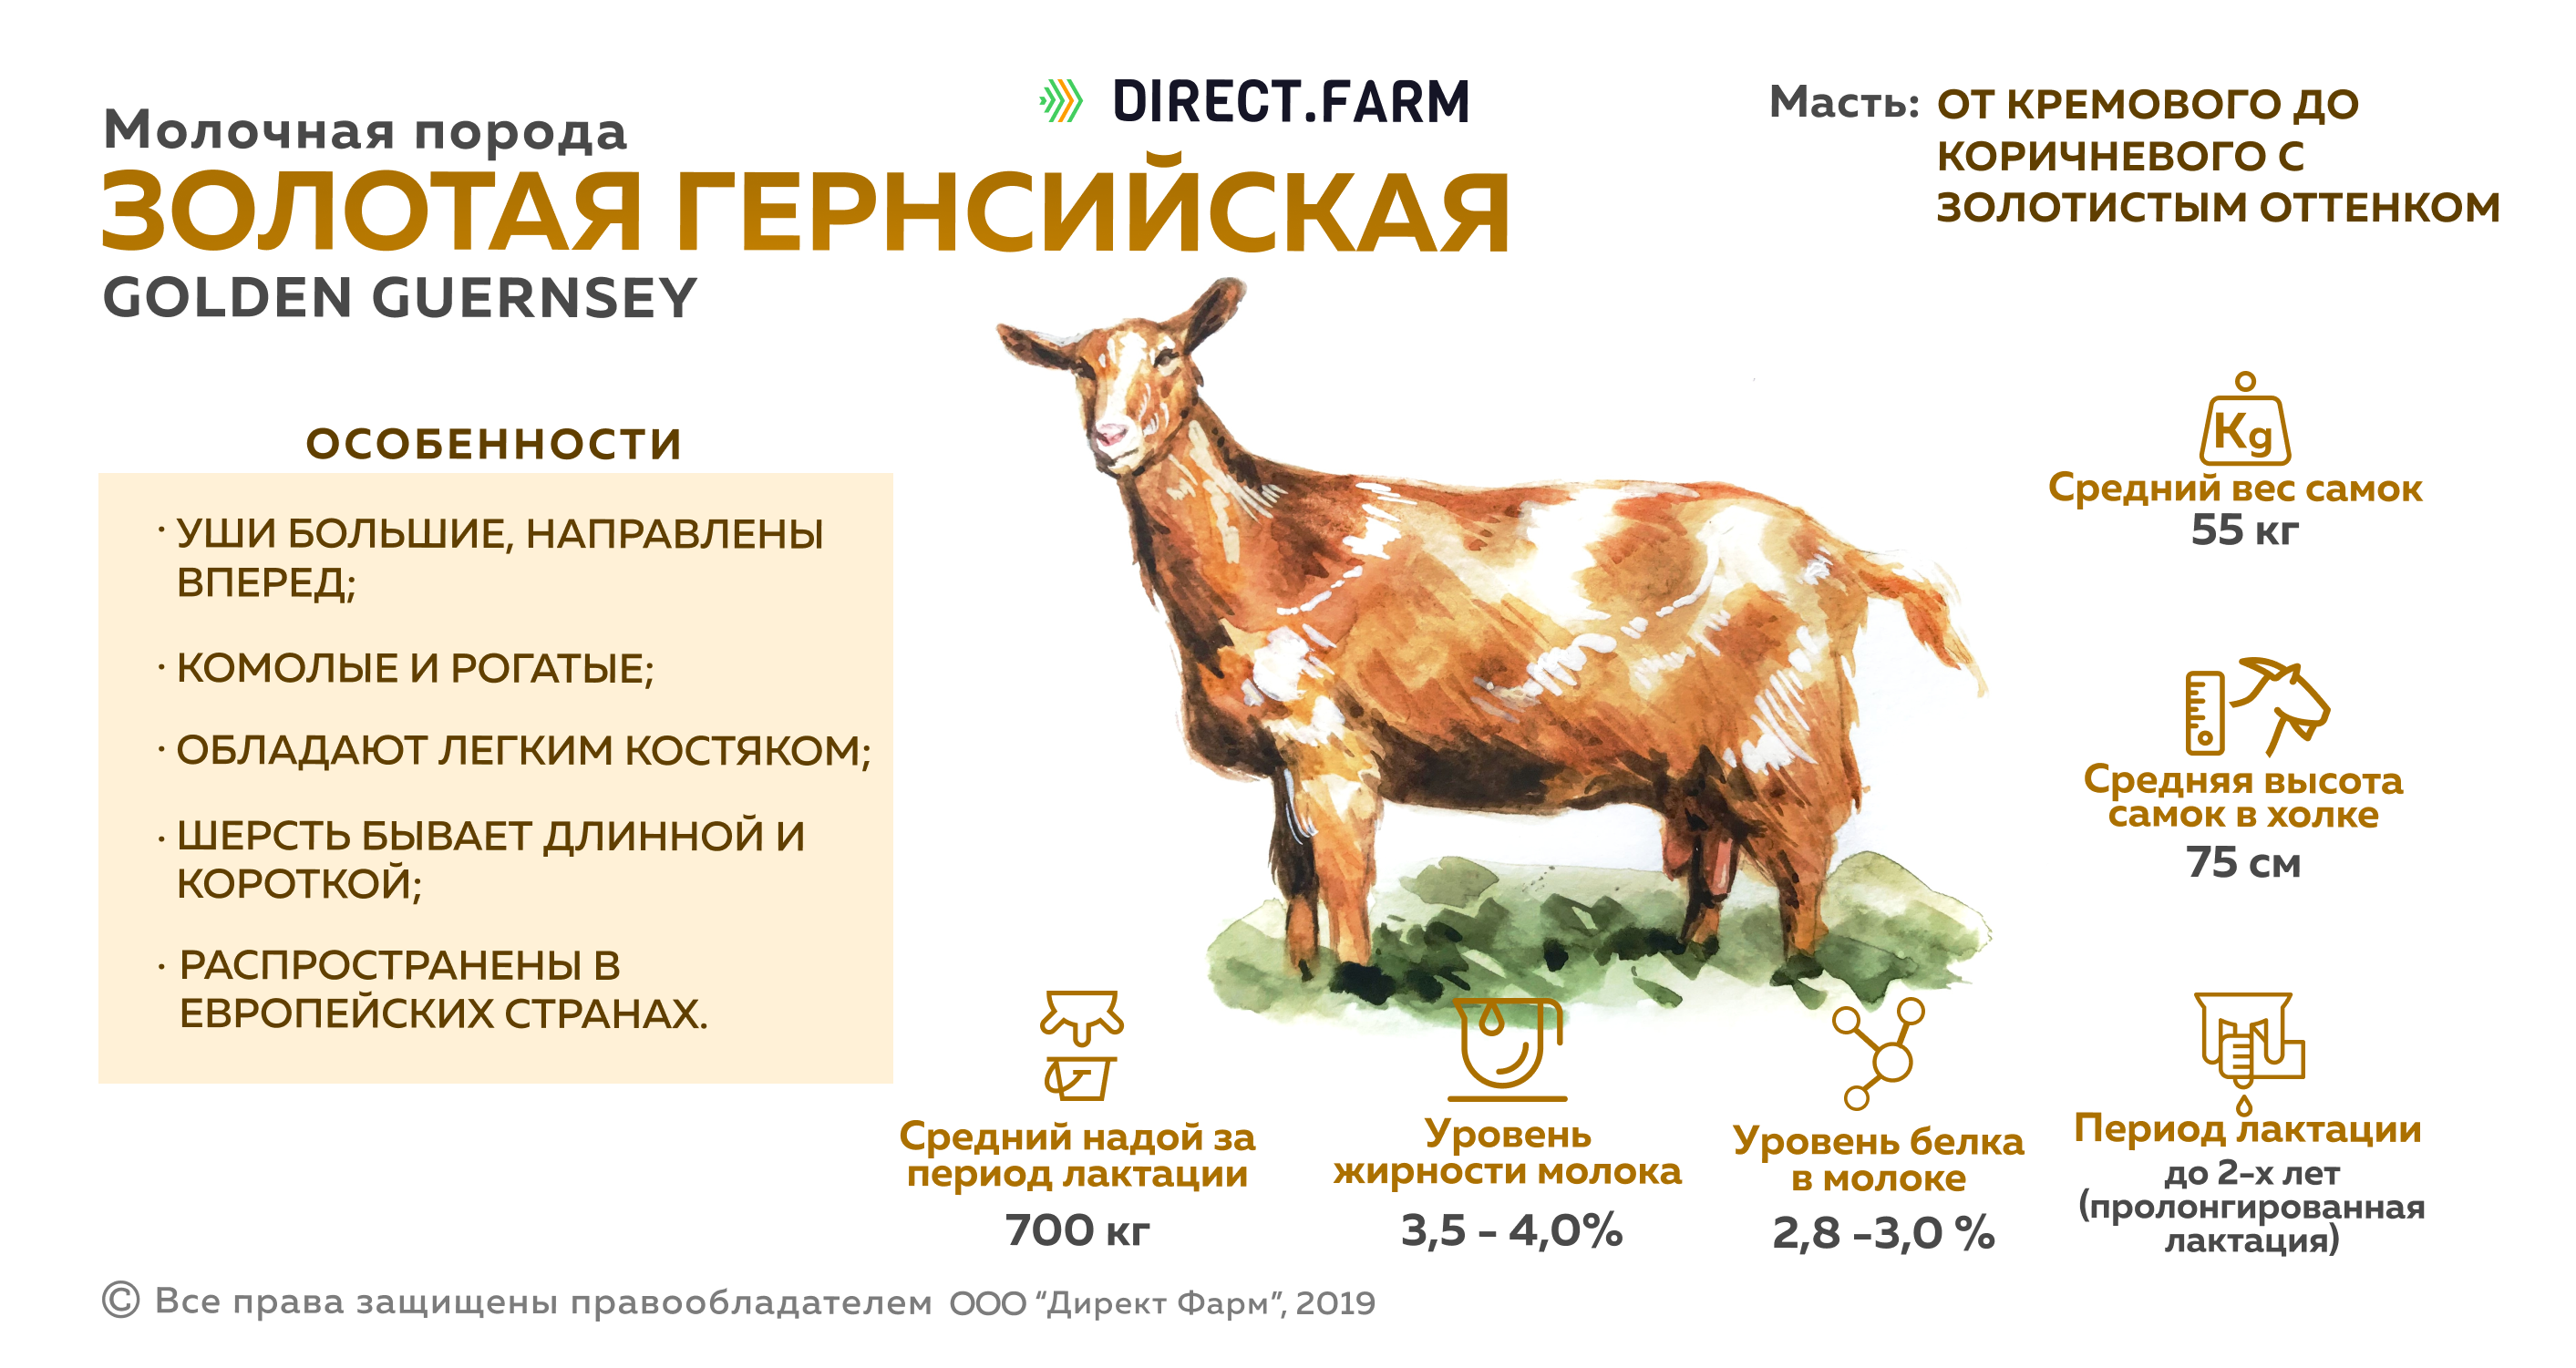 Сколько литров дает коза. Продуктивность молока пород коз. Золотая Гернсийская порода коз. Молочные породы коз сравнительная таблица. Таблица продуктивности коз.